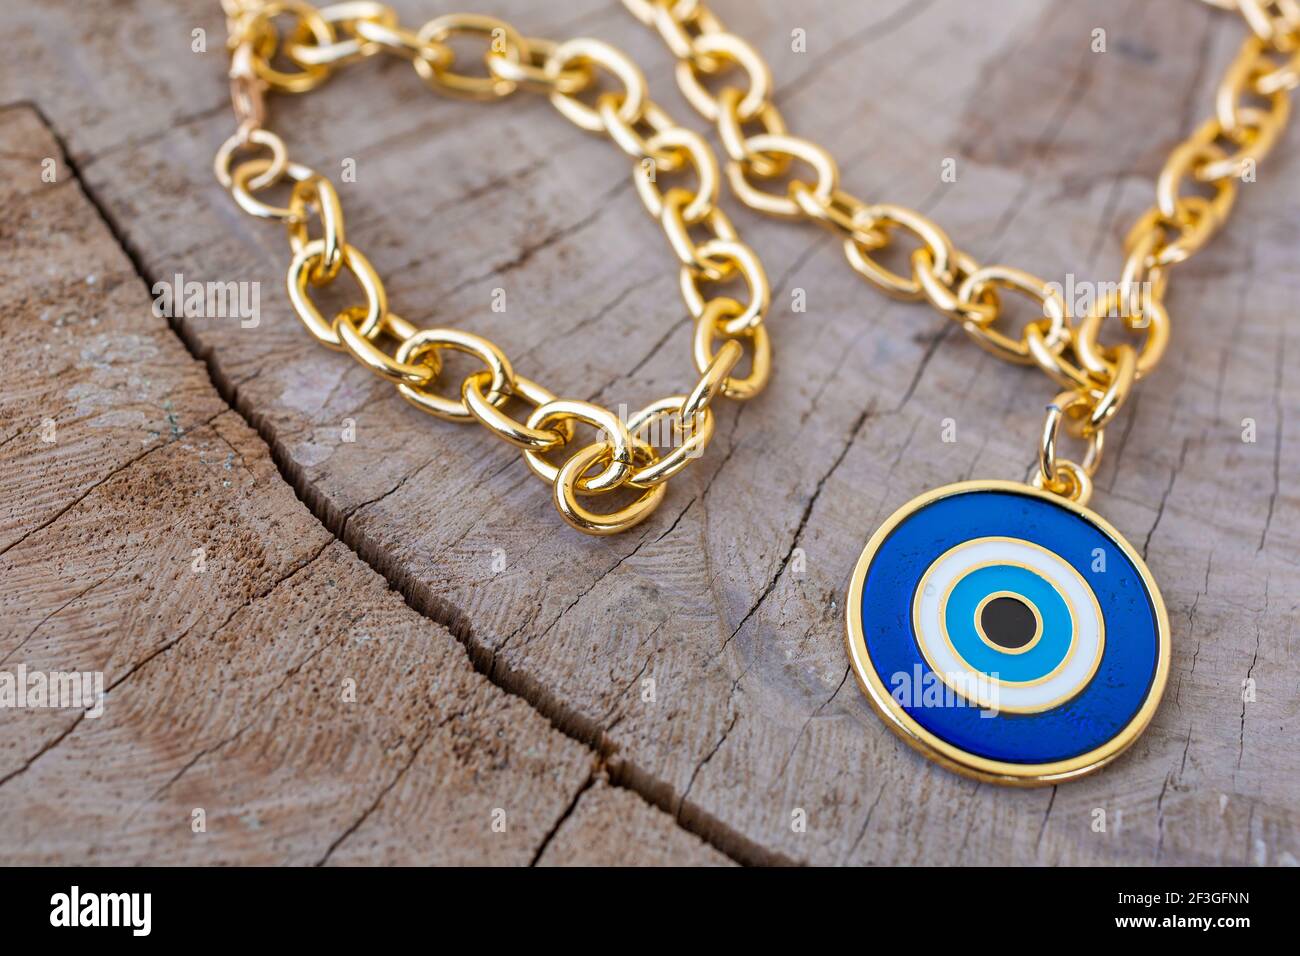 Gros plan d'un collier en chaîne d'or avec un pendentif oeil de bœuf bleu sur une surface en bois Banque D'Images